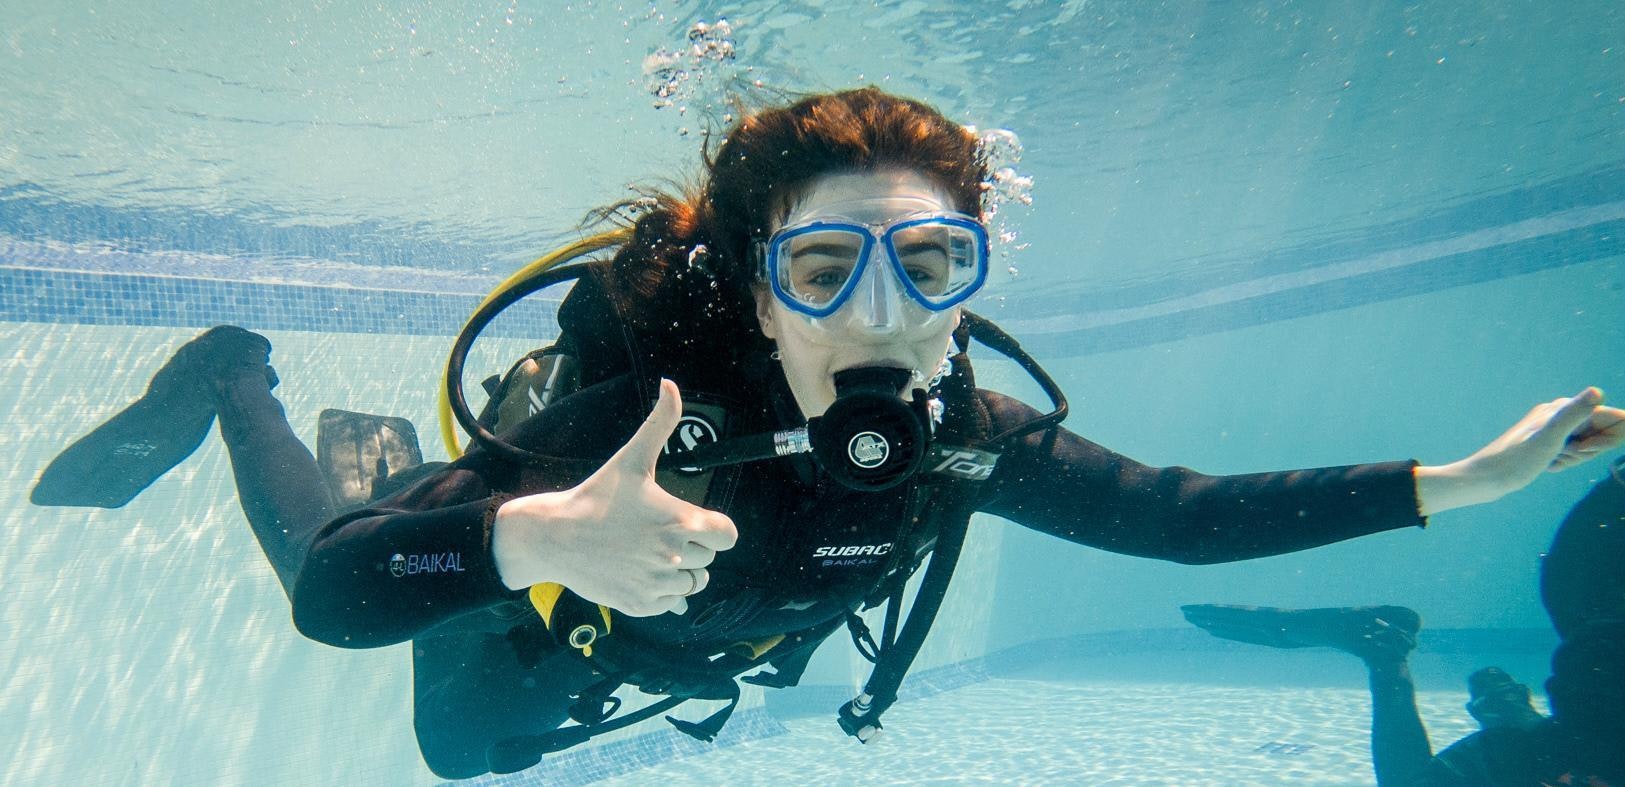 trip to scuba dive|scuba diving travel planner app